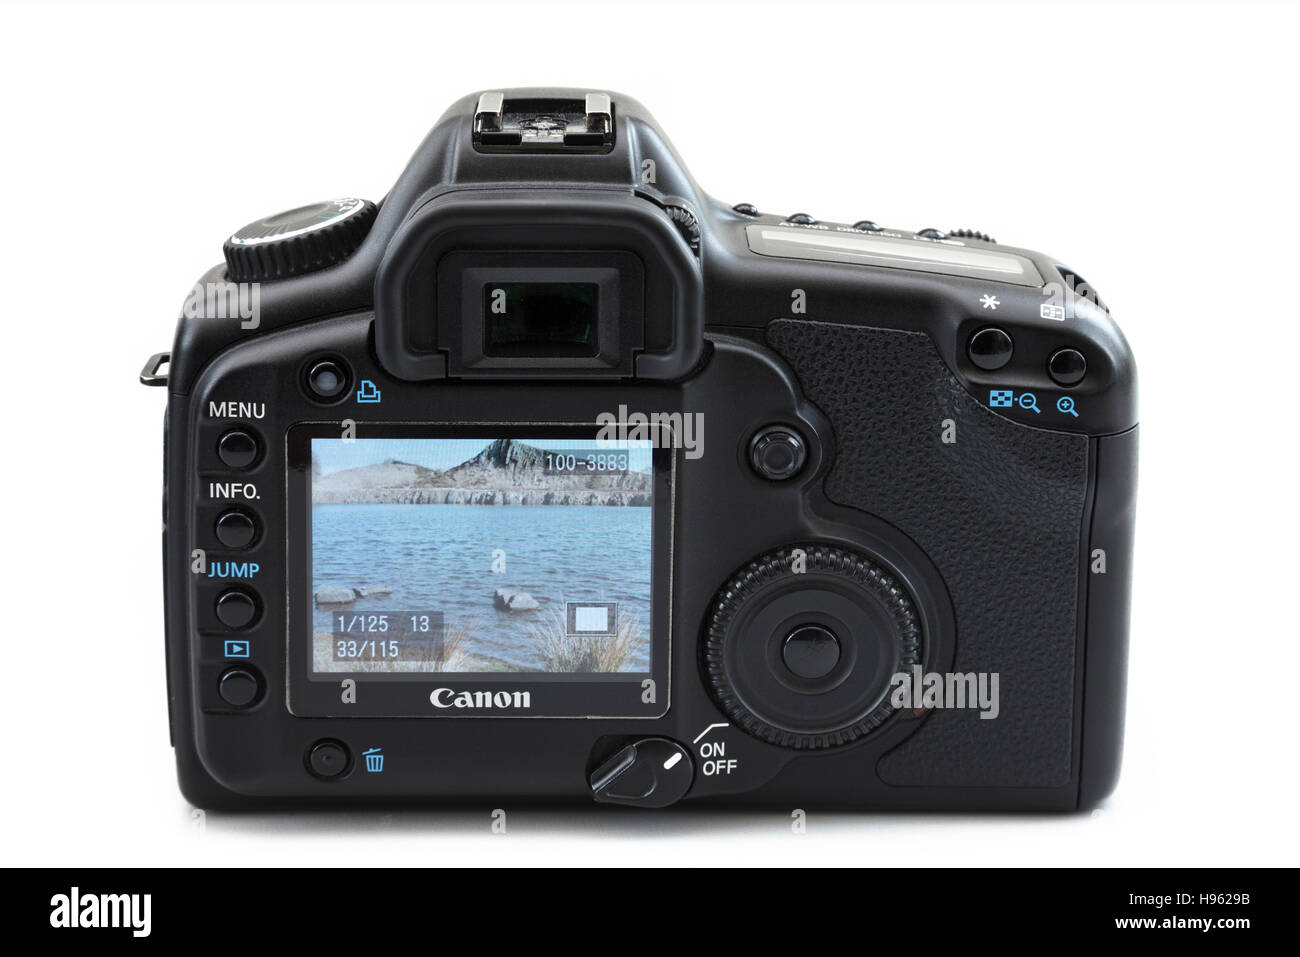 Pantalla LCD en la parte de atrás de una Canon 5D MK II cámara digital SLR  que muestra una fotografía de una escena al aire libre costeros. Aislado en  blanco Fotografía de